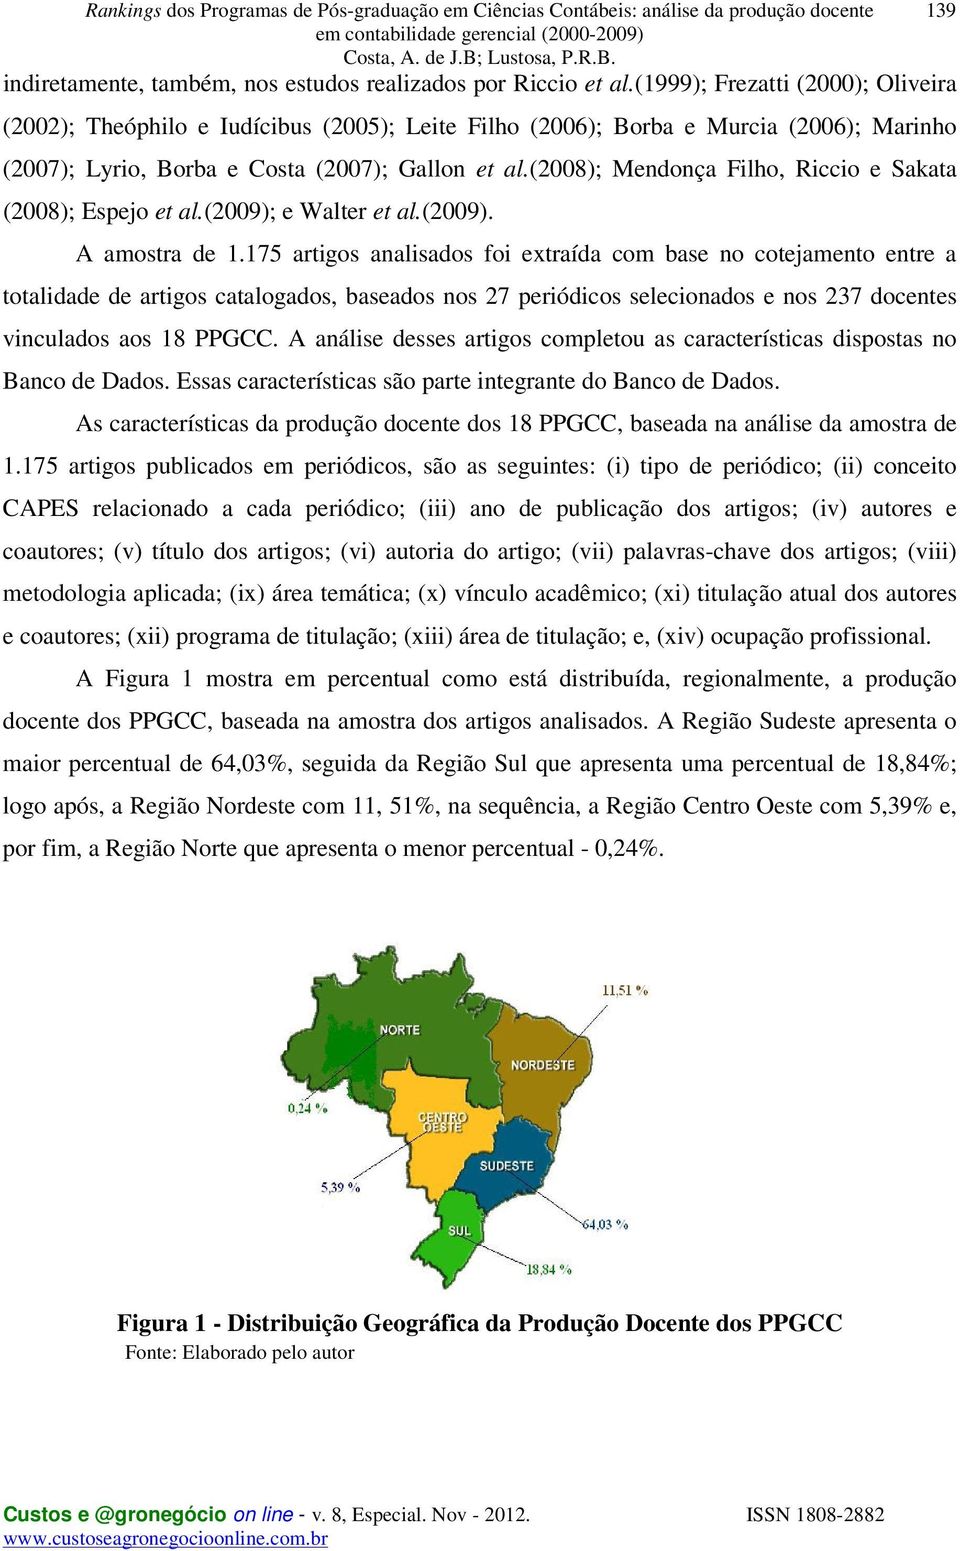 (2008); Mendonça Filho, Riccio e Sakata (2008); Espejo et al.(2009); e Walter et al.(2009). A amostra de 1.